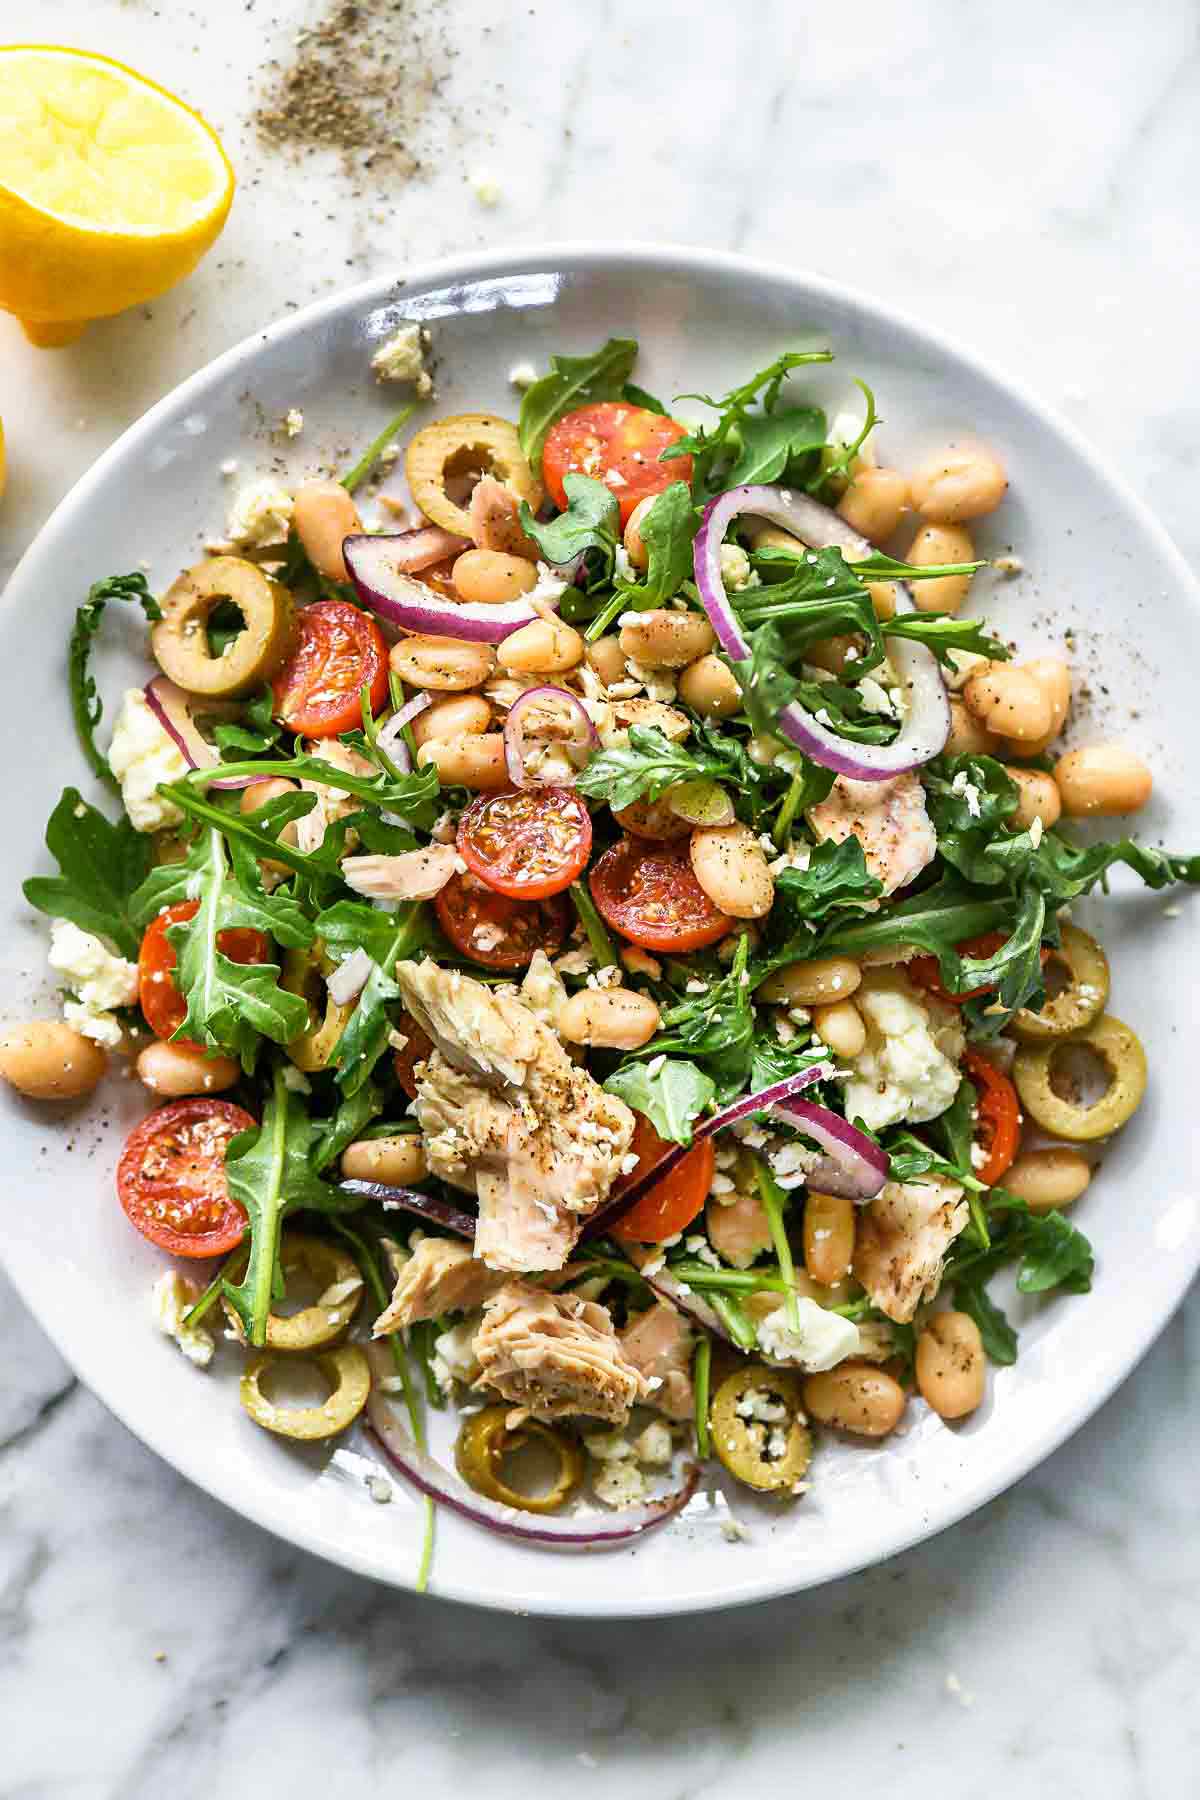 50 Favorite Mediterranean Diet Recipes | foodiecrush .com